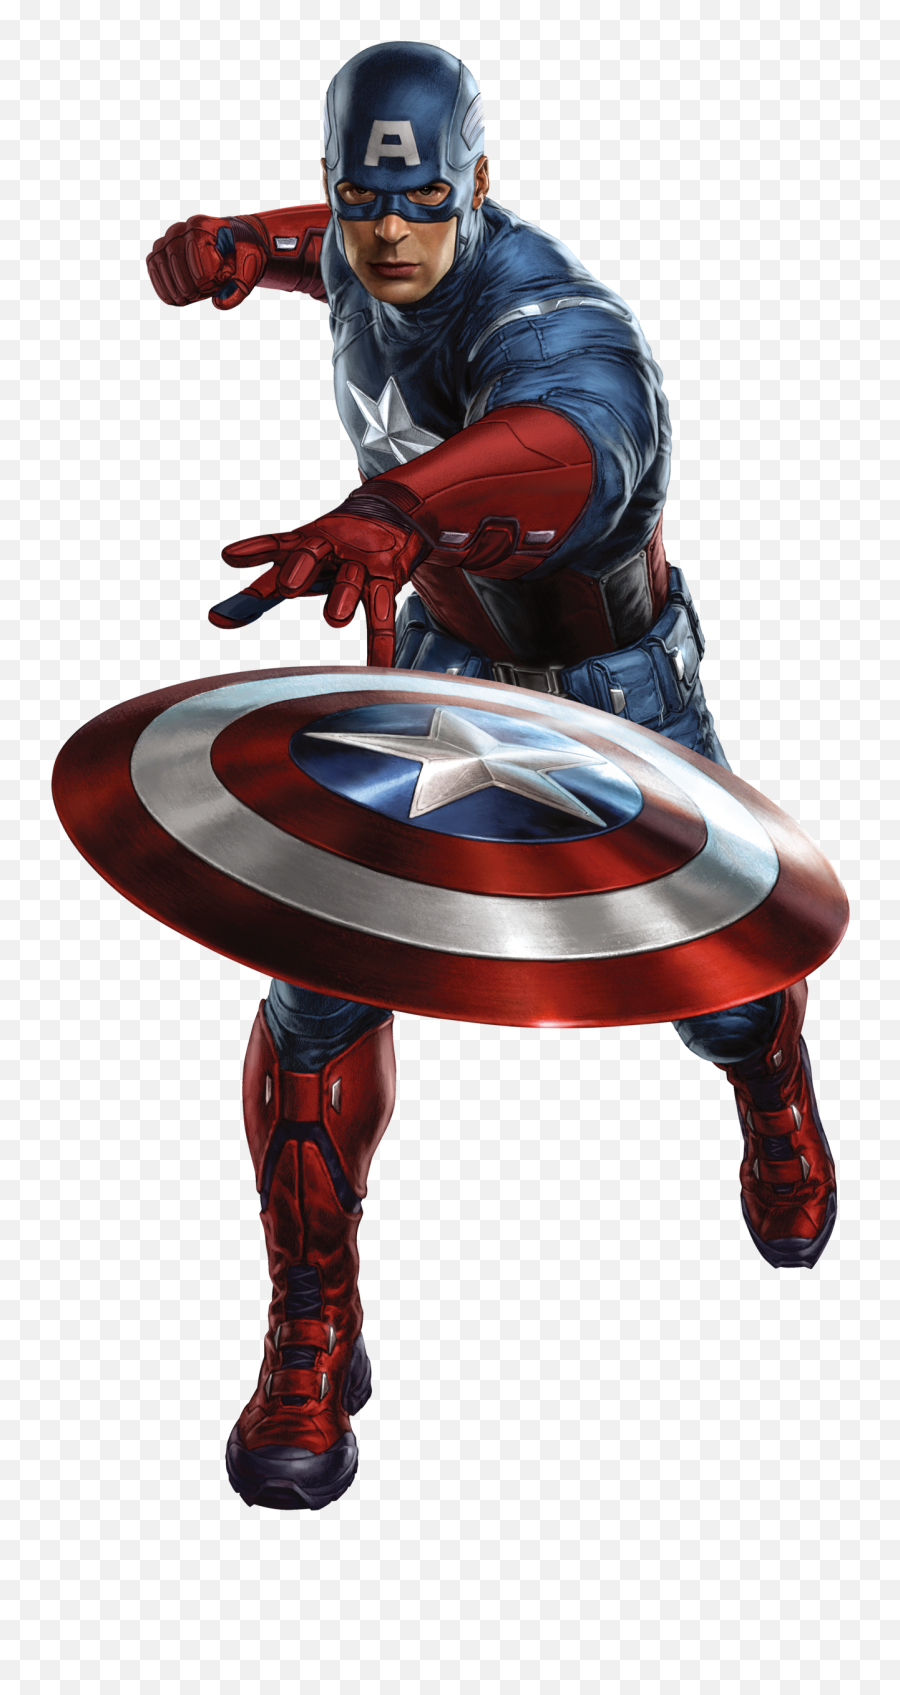 Captain America Png - Imagenes De Avengers Png Emoji,Captain America Emoji